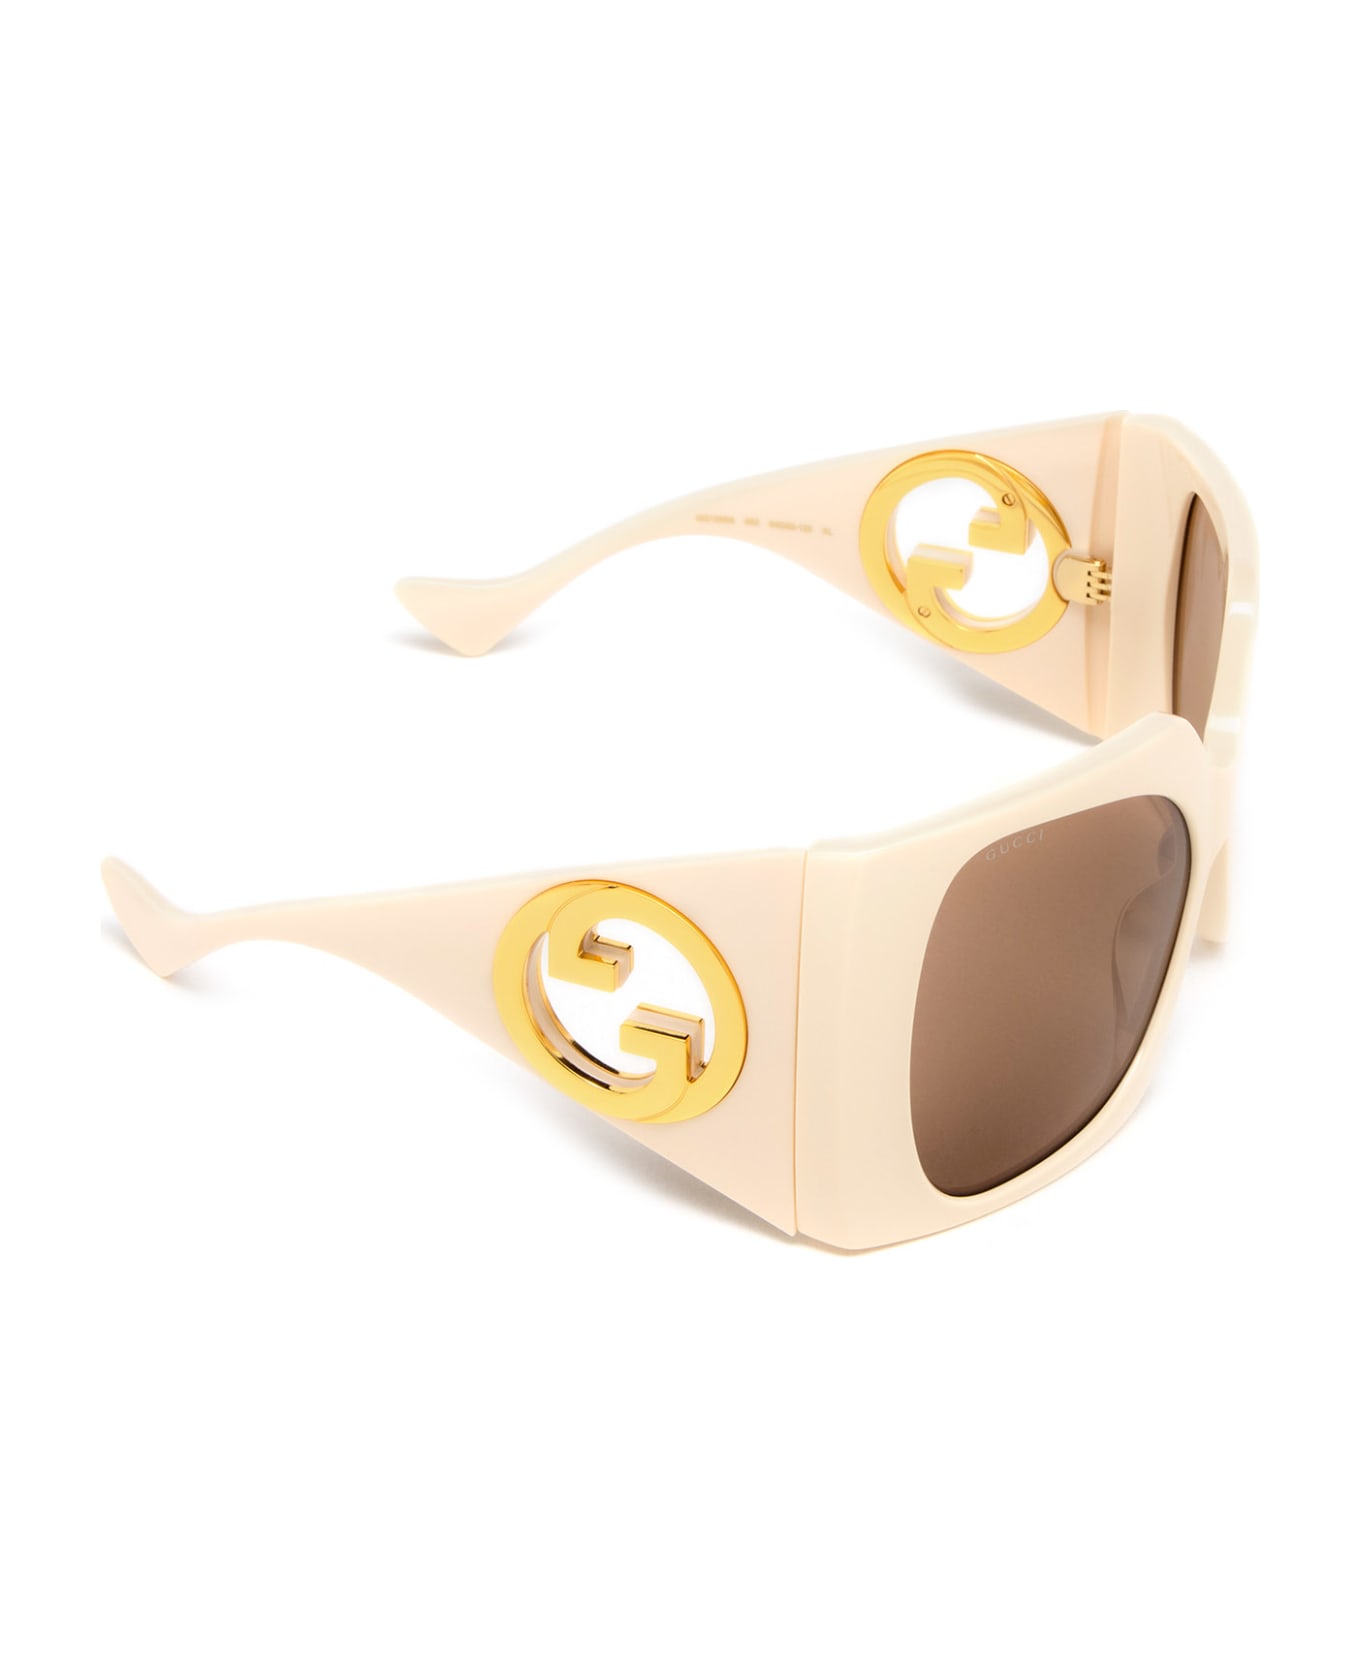 Gucci Eyewear Gg1255s Ivory Sunglasses - Ivory